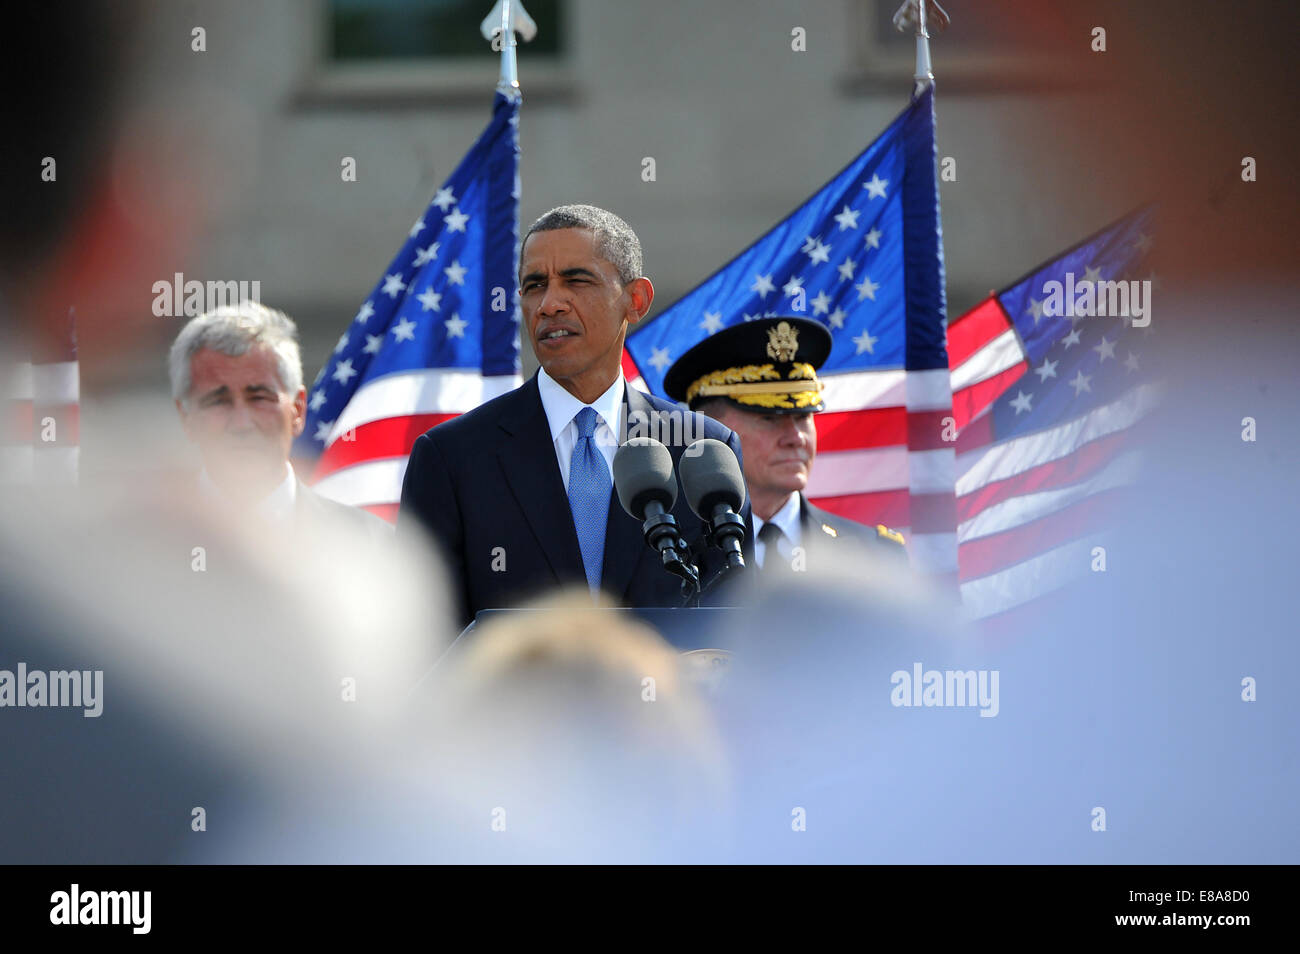 El presidente Barack Obama habla durante la ceremonia conmemorativa del 9/11 al 9/11 Memorial Nacional del Pentágono en el Pentágono en Arlington, Virginia, el 11 de septiembre, 2014. Los terroristas secuestraron cuatro aviones de pasajeros el 11 de septiembre de 2001. Dos de los aviones fueron deliberadamente cra Foto de stock